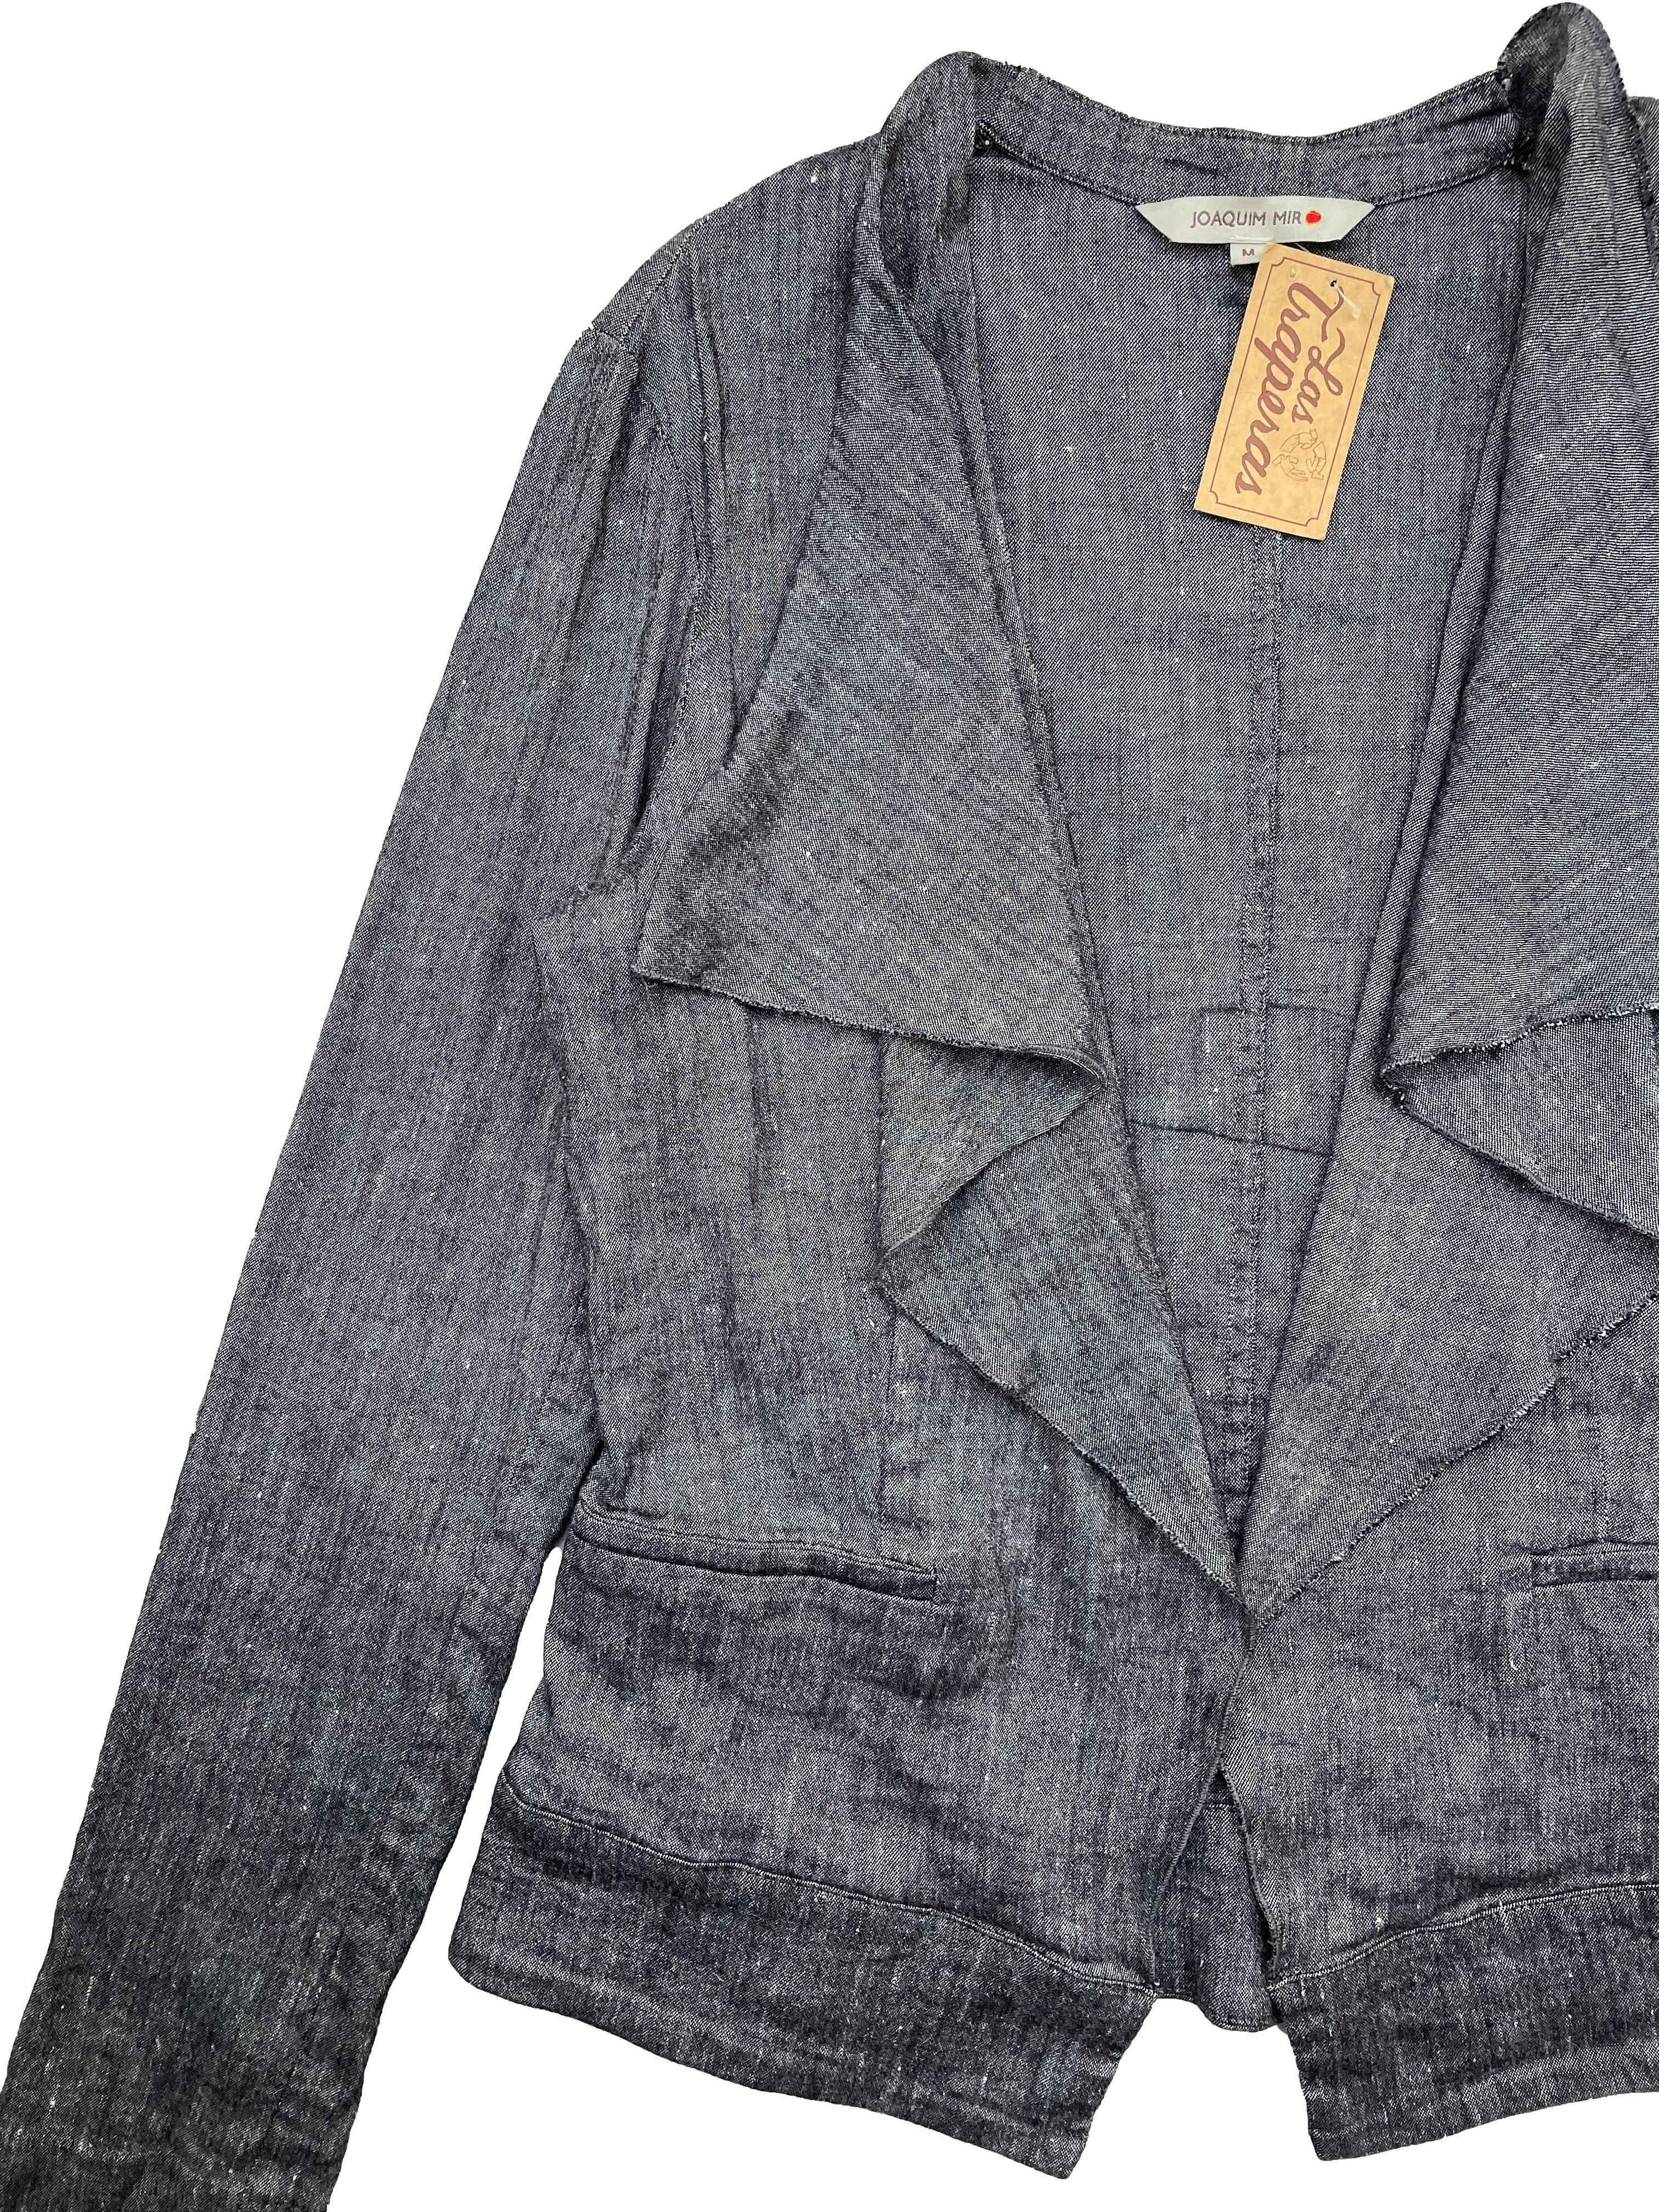 Blazer Joaquin Miro gris jaspeado, tela delgada 54% lino, modelo abierto con solapas asimétricas, falsos bolsillos y abertura en puños. Busto 100cm, Largo 54cm.